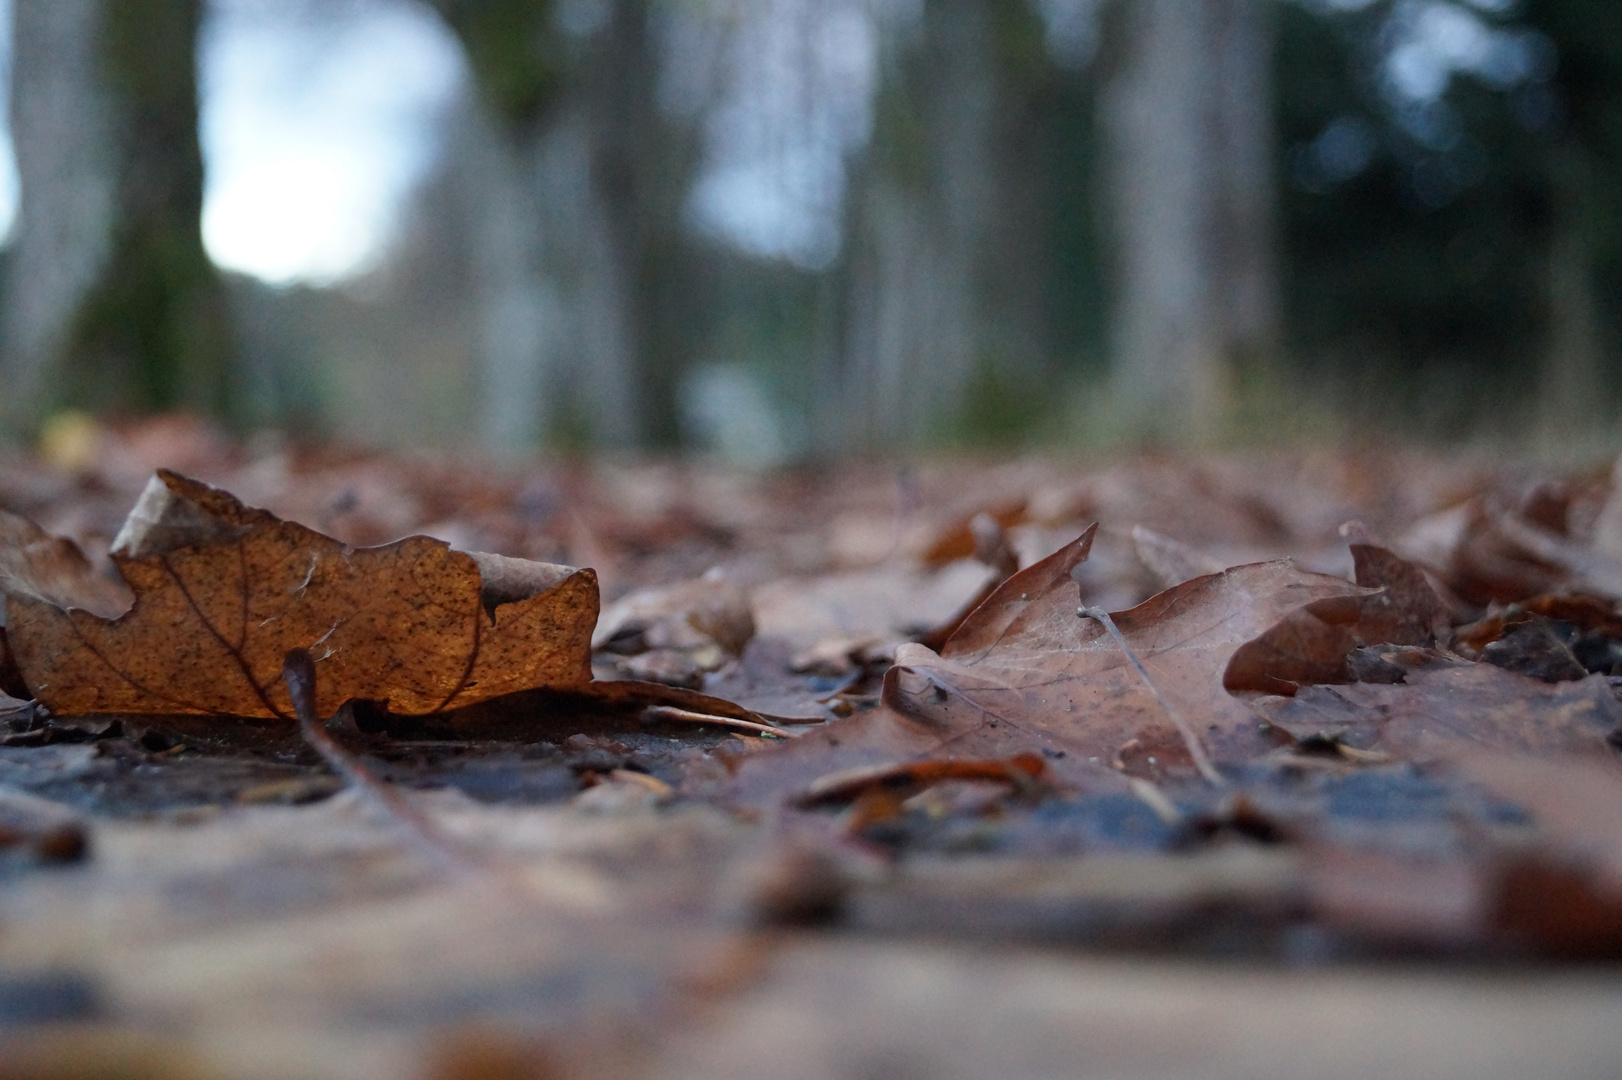 fallen leafs